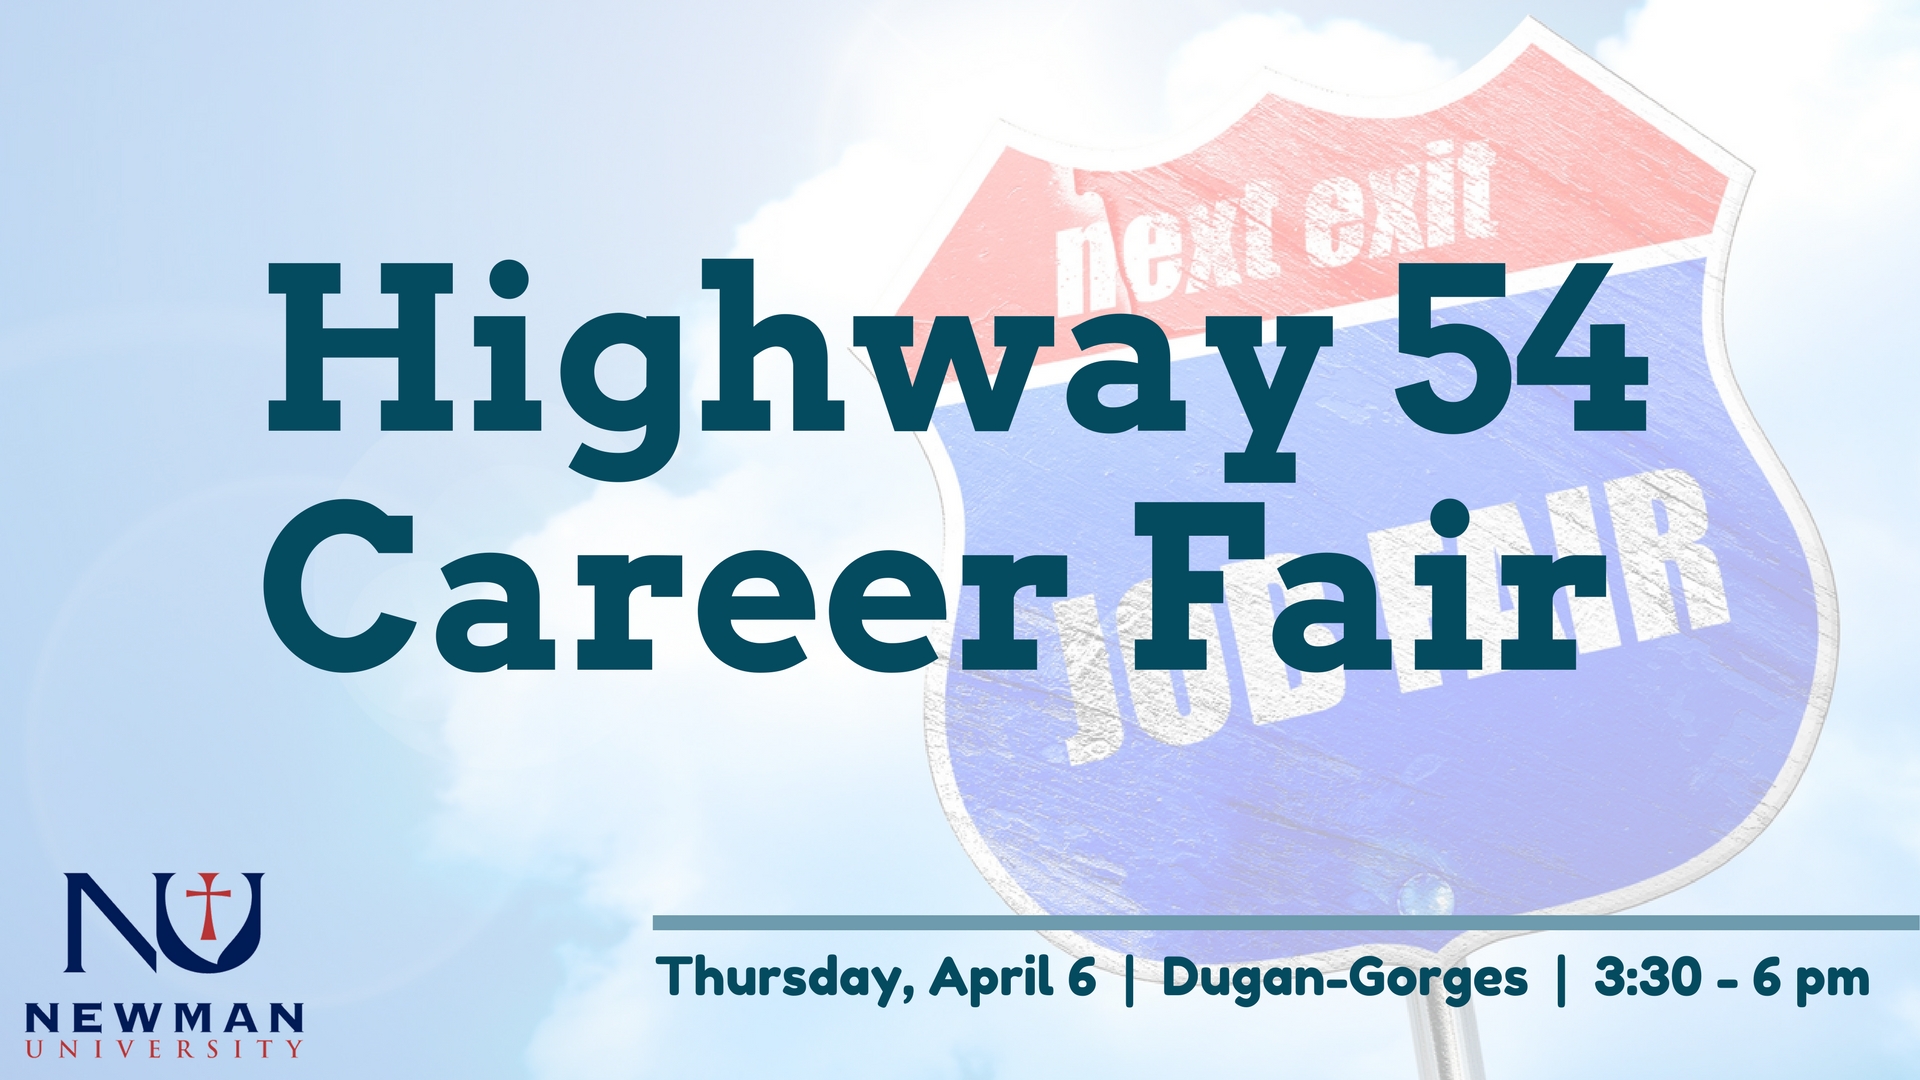 Highway 54 Career Fair